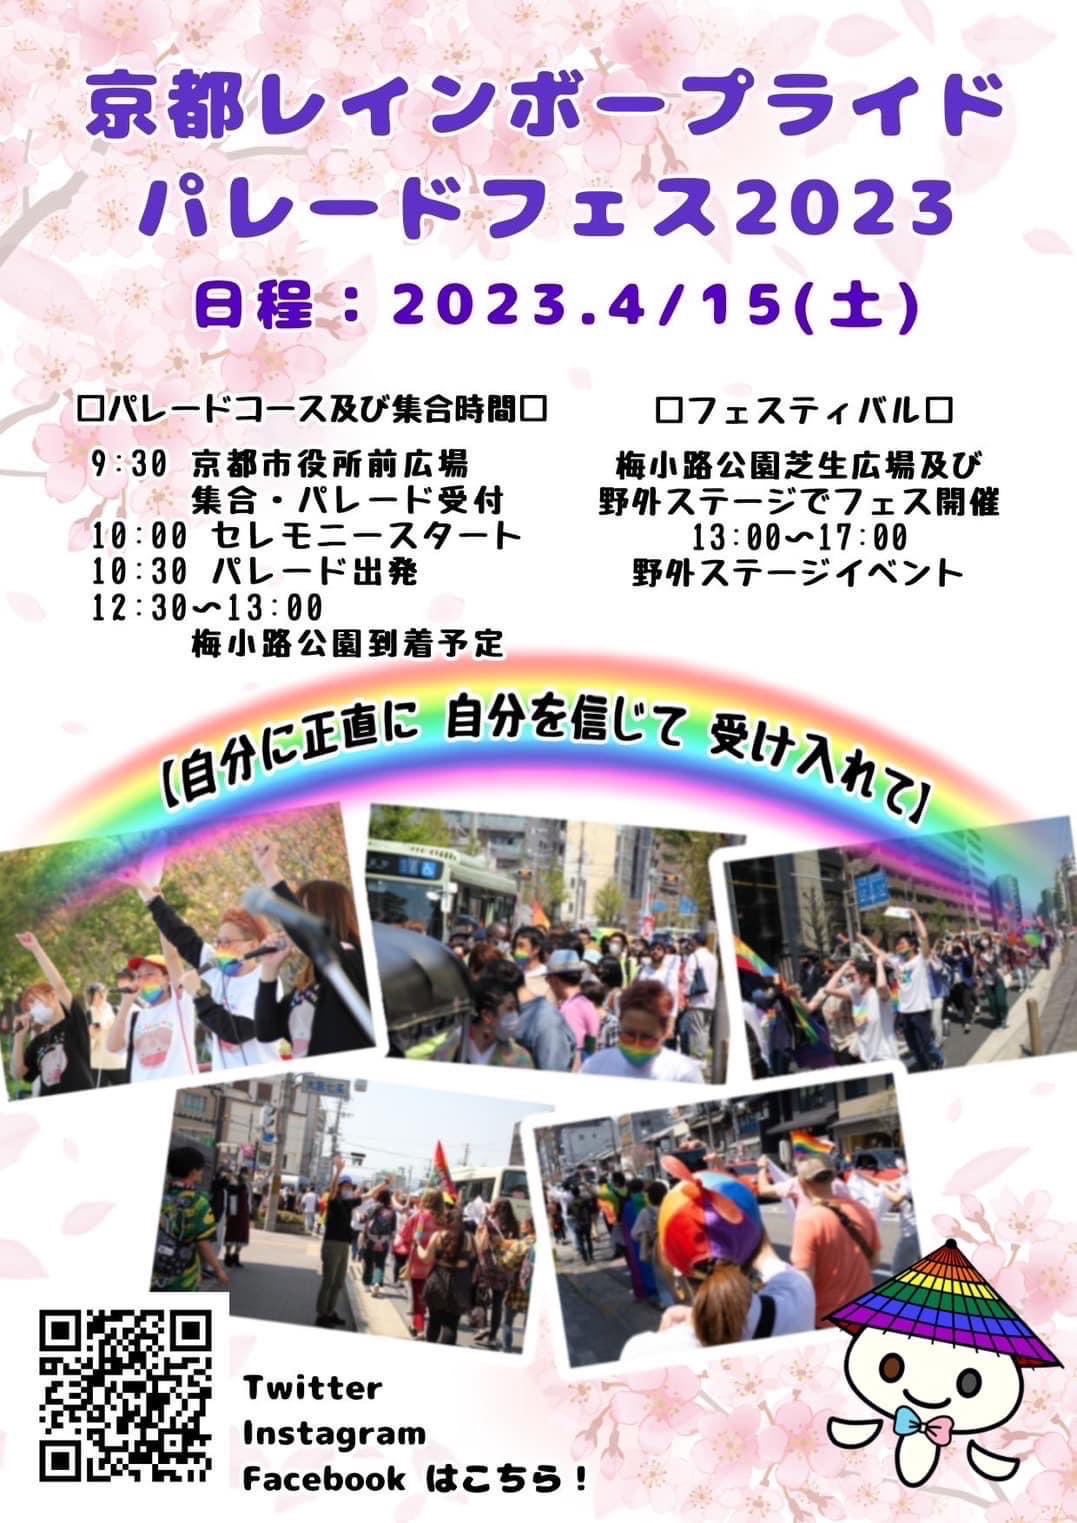 『京都レインボープライド　パレードフェス🌈』が開催されました。雨の中「日本LGBTサポート協会」の会員さんも横断幕を持って参加され、夕方からは交流会がありました。